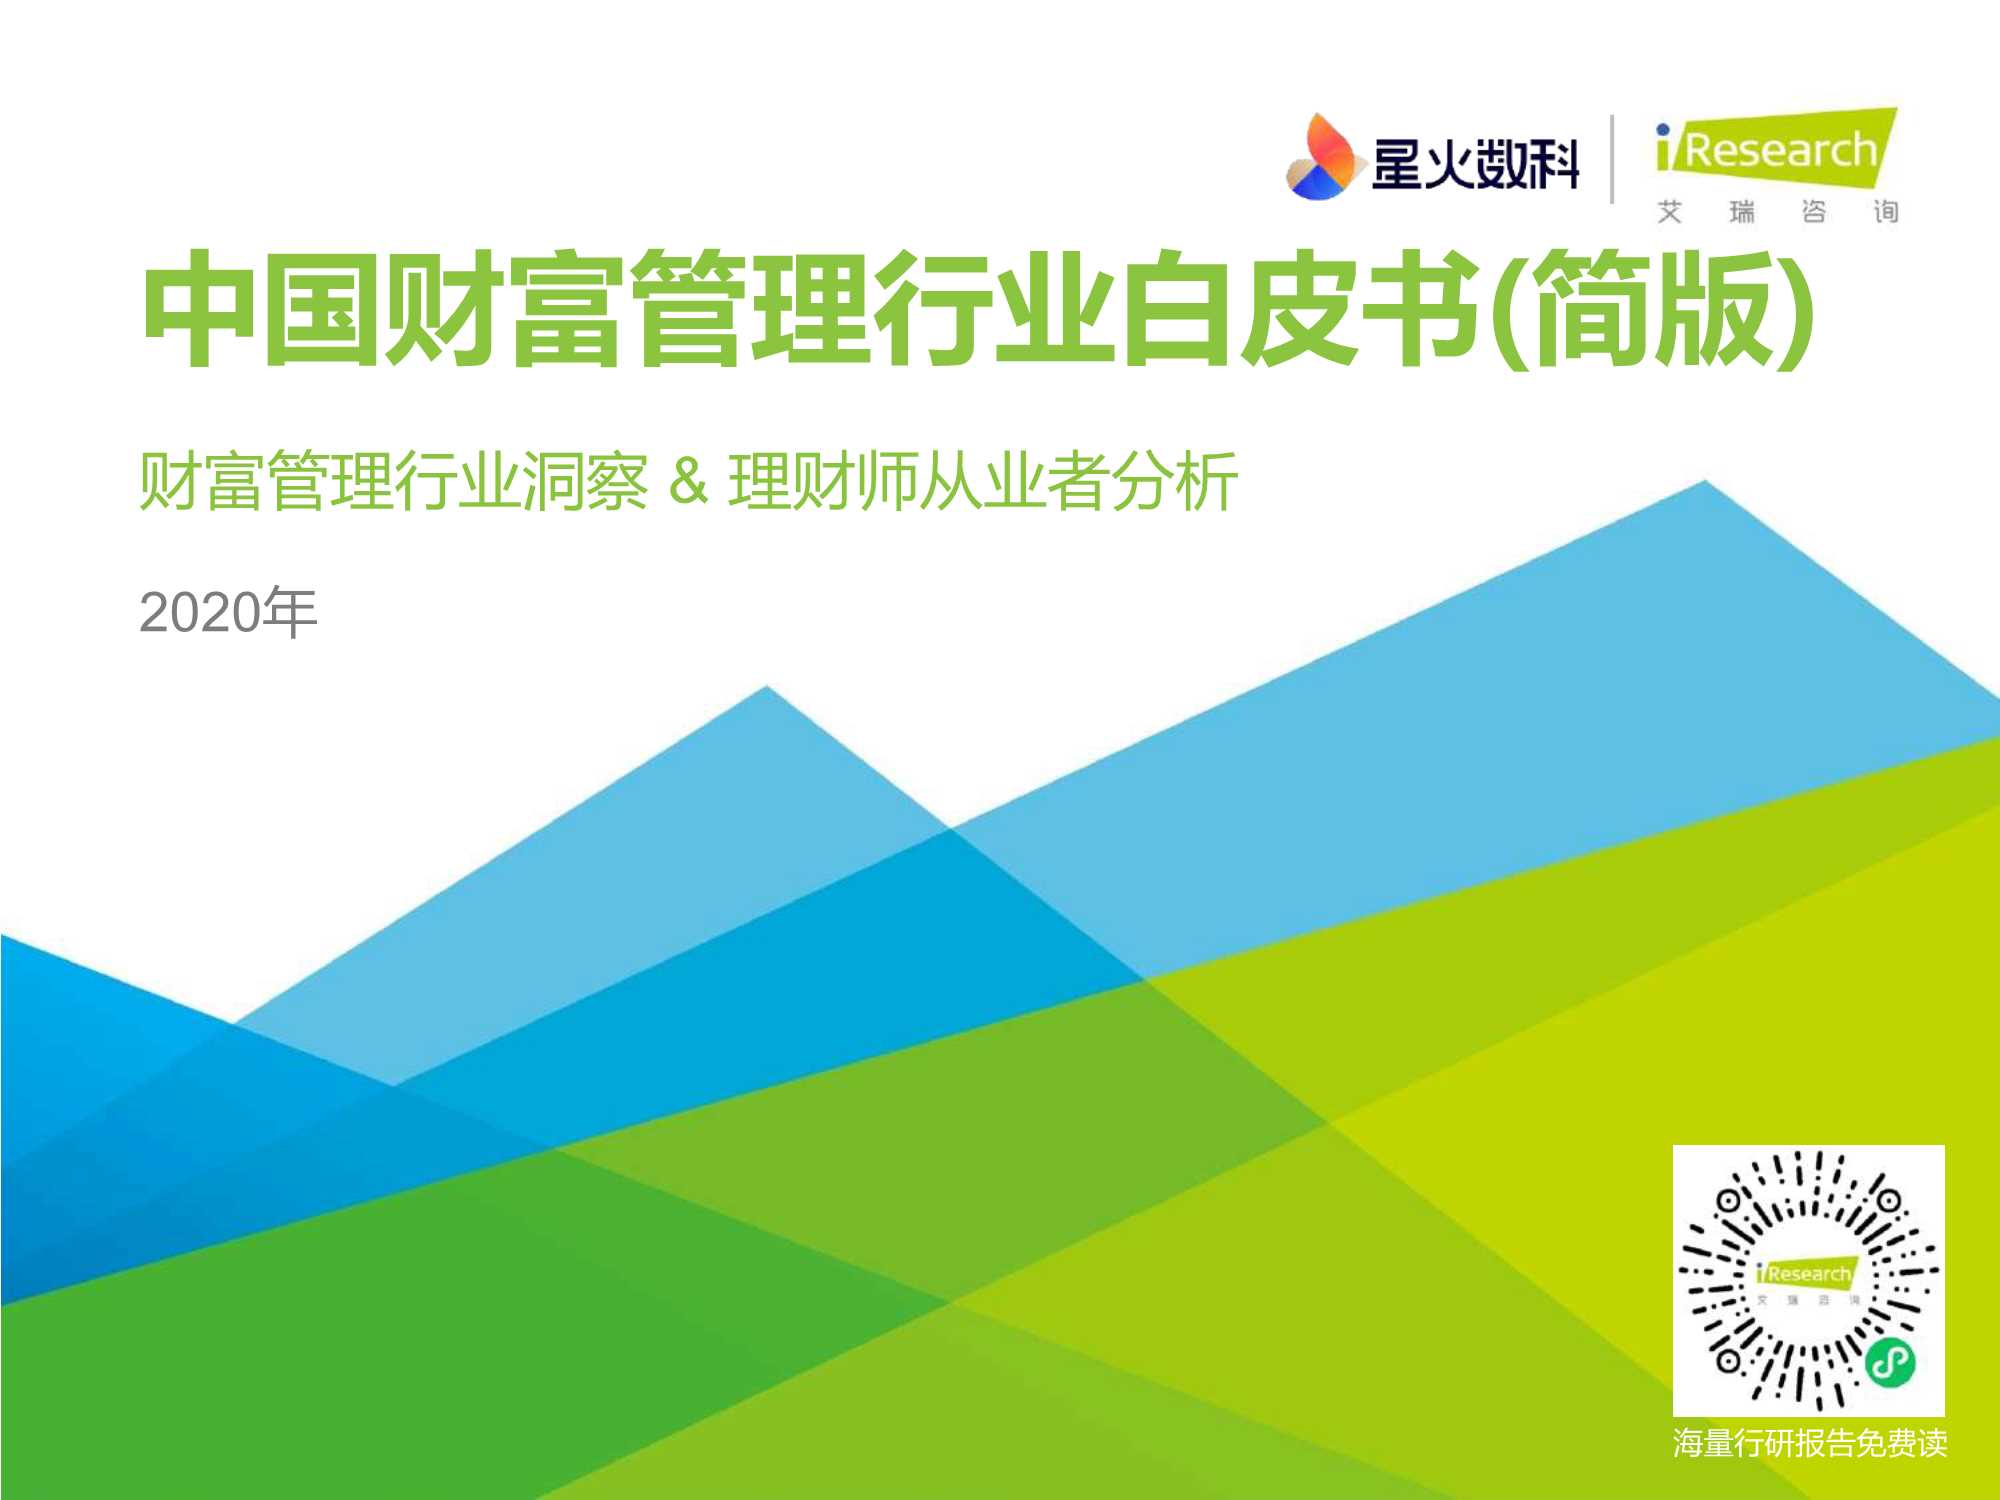 艾瑞咨询-2020年中国财富管理行业白皮书—简版-2021.04-39页